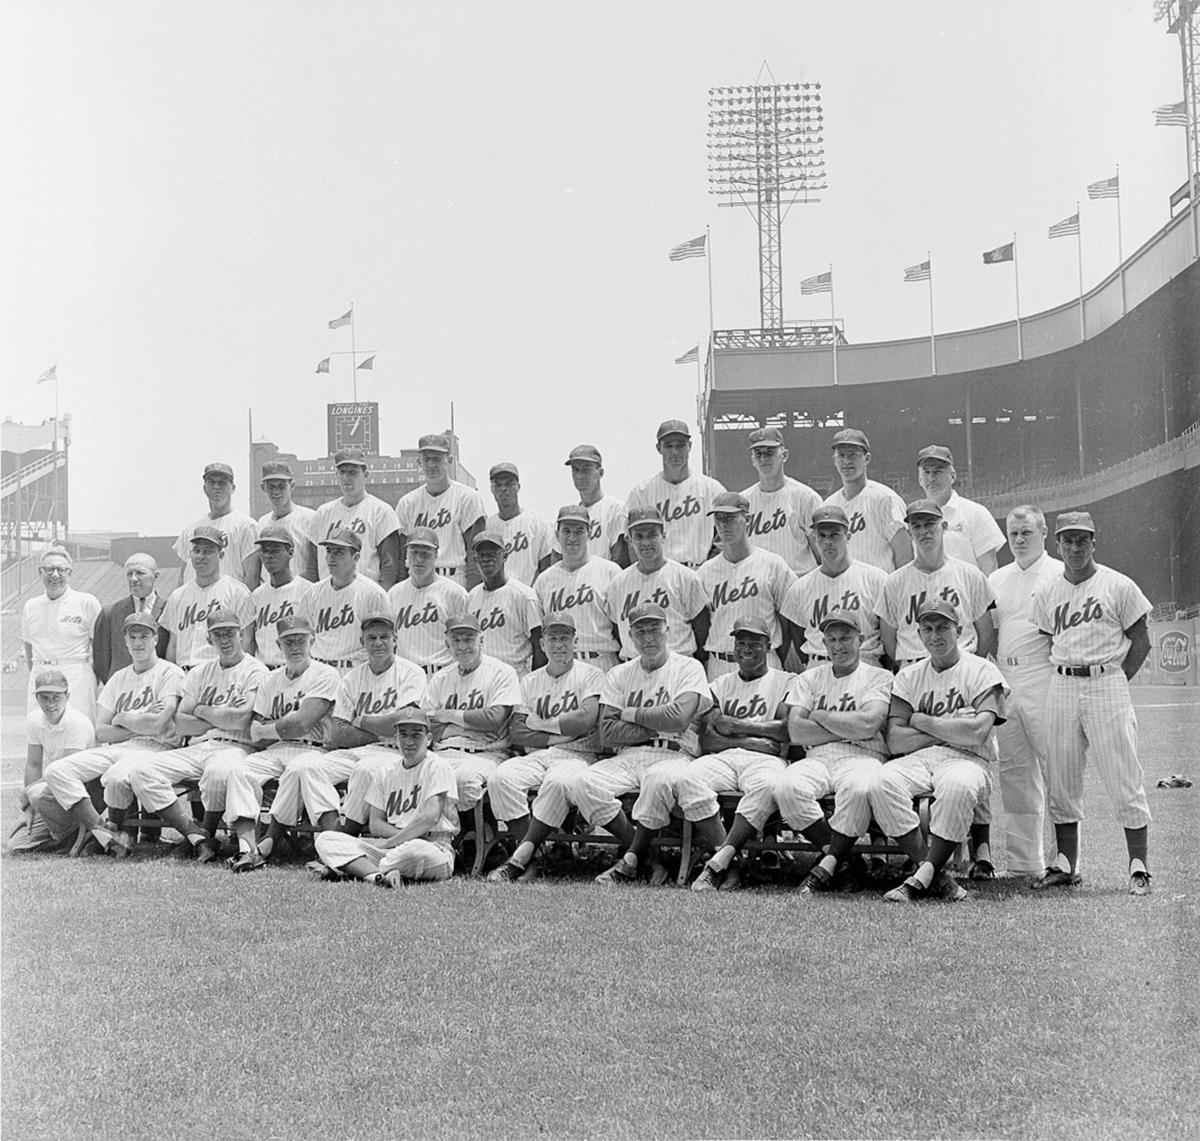 1962 Mets  New york mets, Mets, Mets team